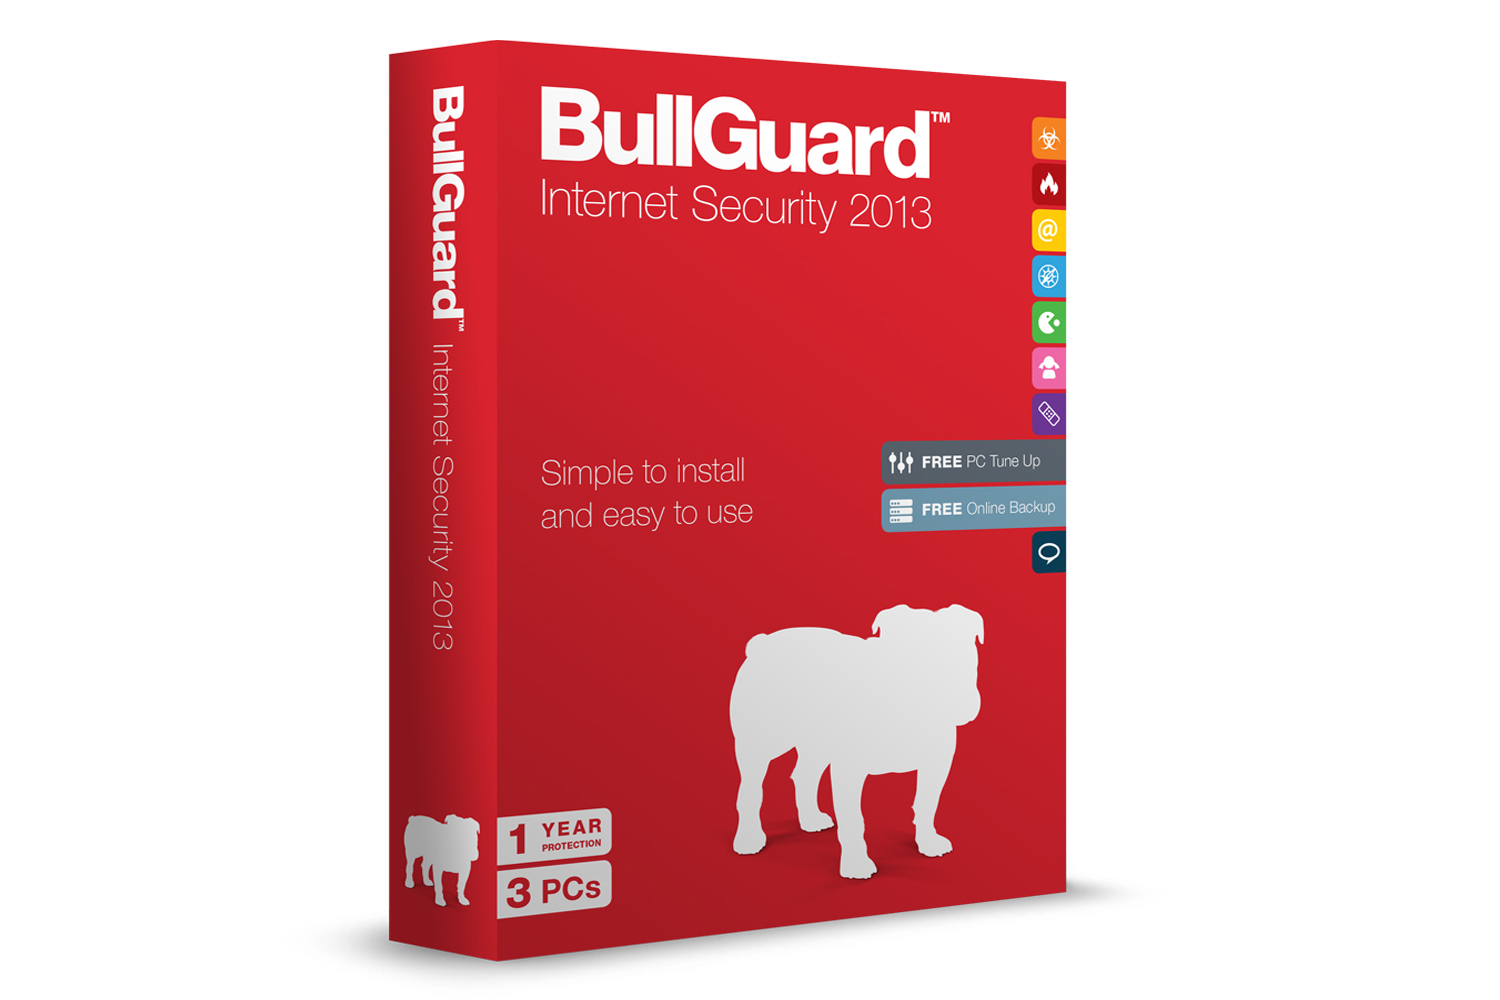 Bullguard Antivirus Download